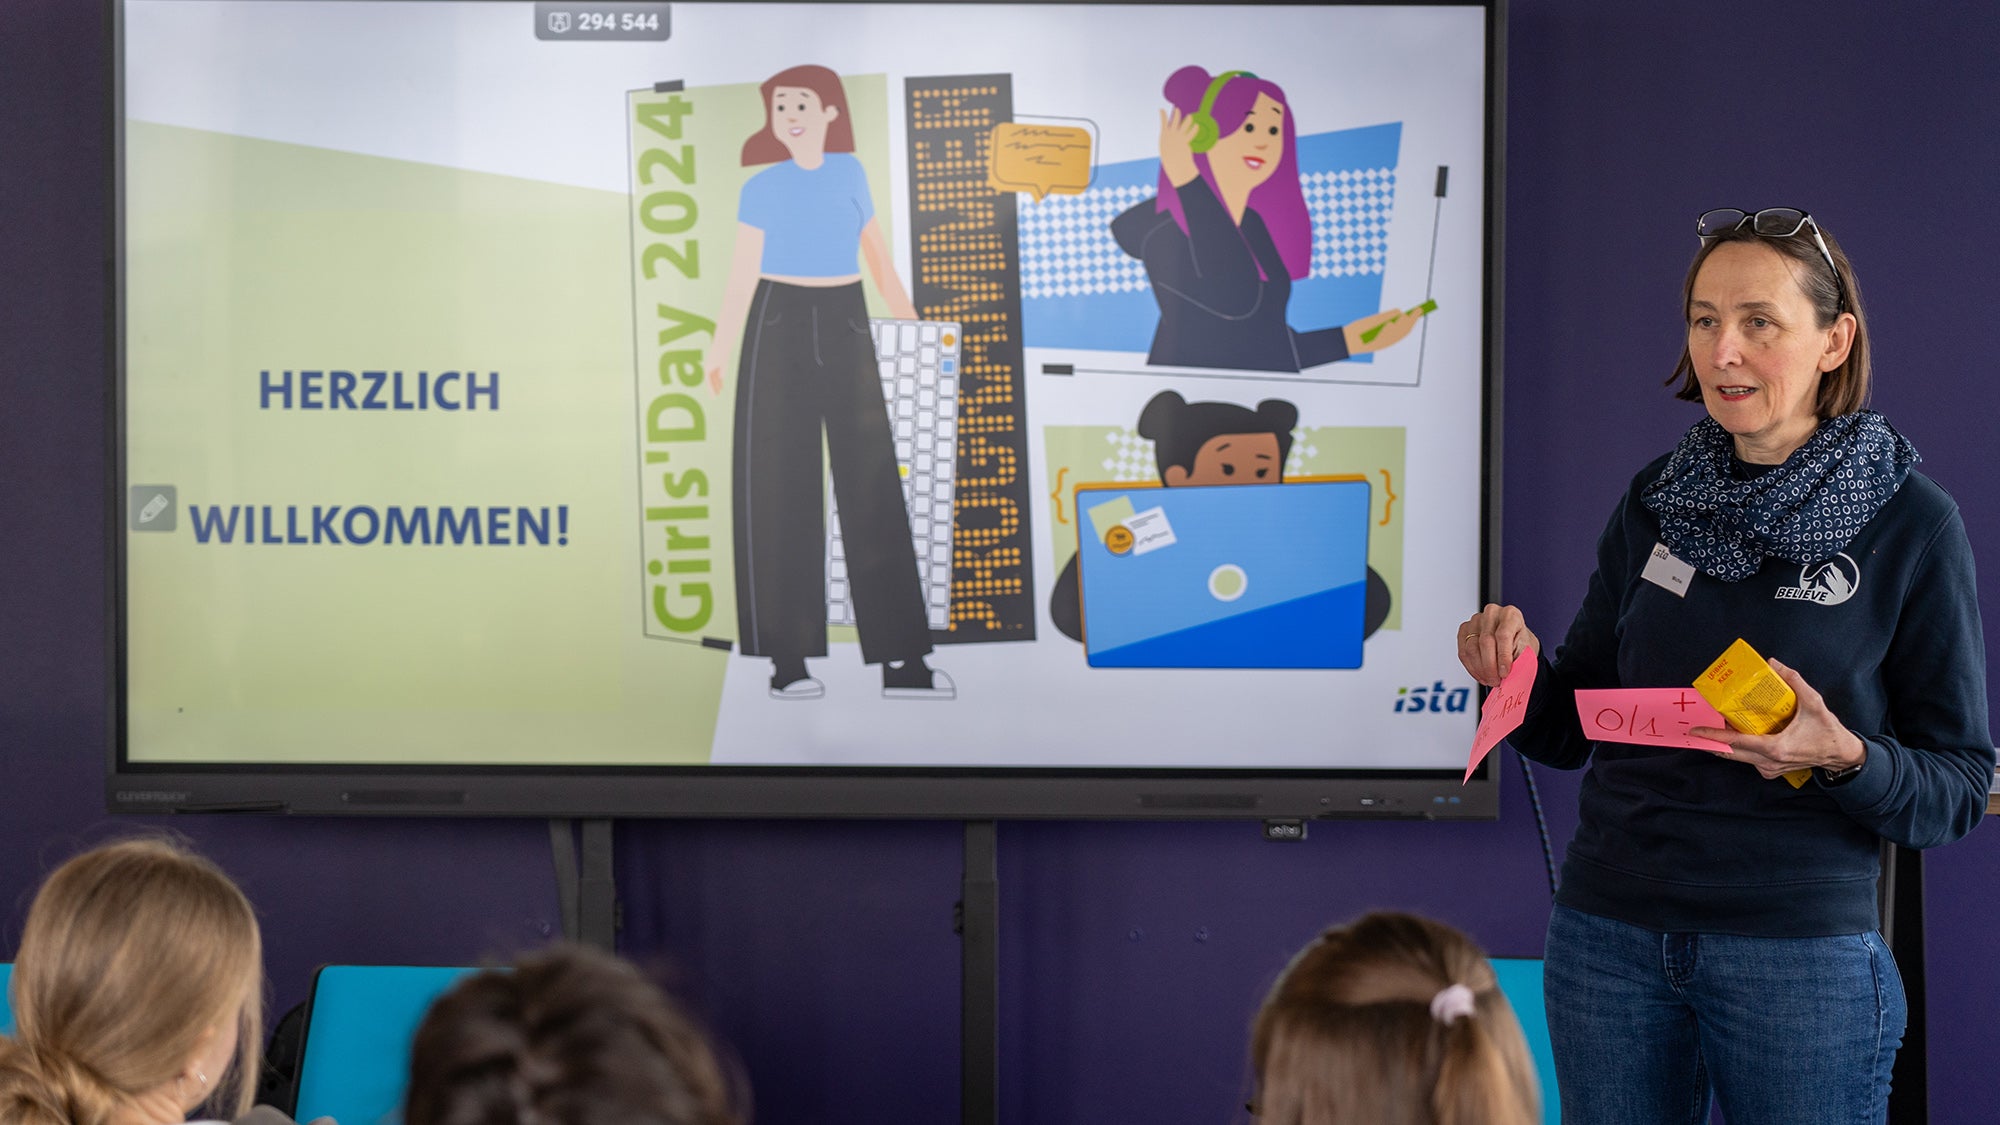 Eine Frau hält einen Vortrag in einem Konferenzraum, steht neben einem großen digitalen Bildschirm, der eine Willkommensbotschaft für den Girls Day 2024 anzeigt. Sie hält und betrachtet rosa und gelbe Haftnotizen, während sie ein nicht im Bild sichtbares Publikum anspricht.